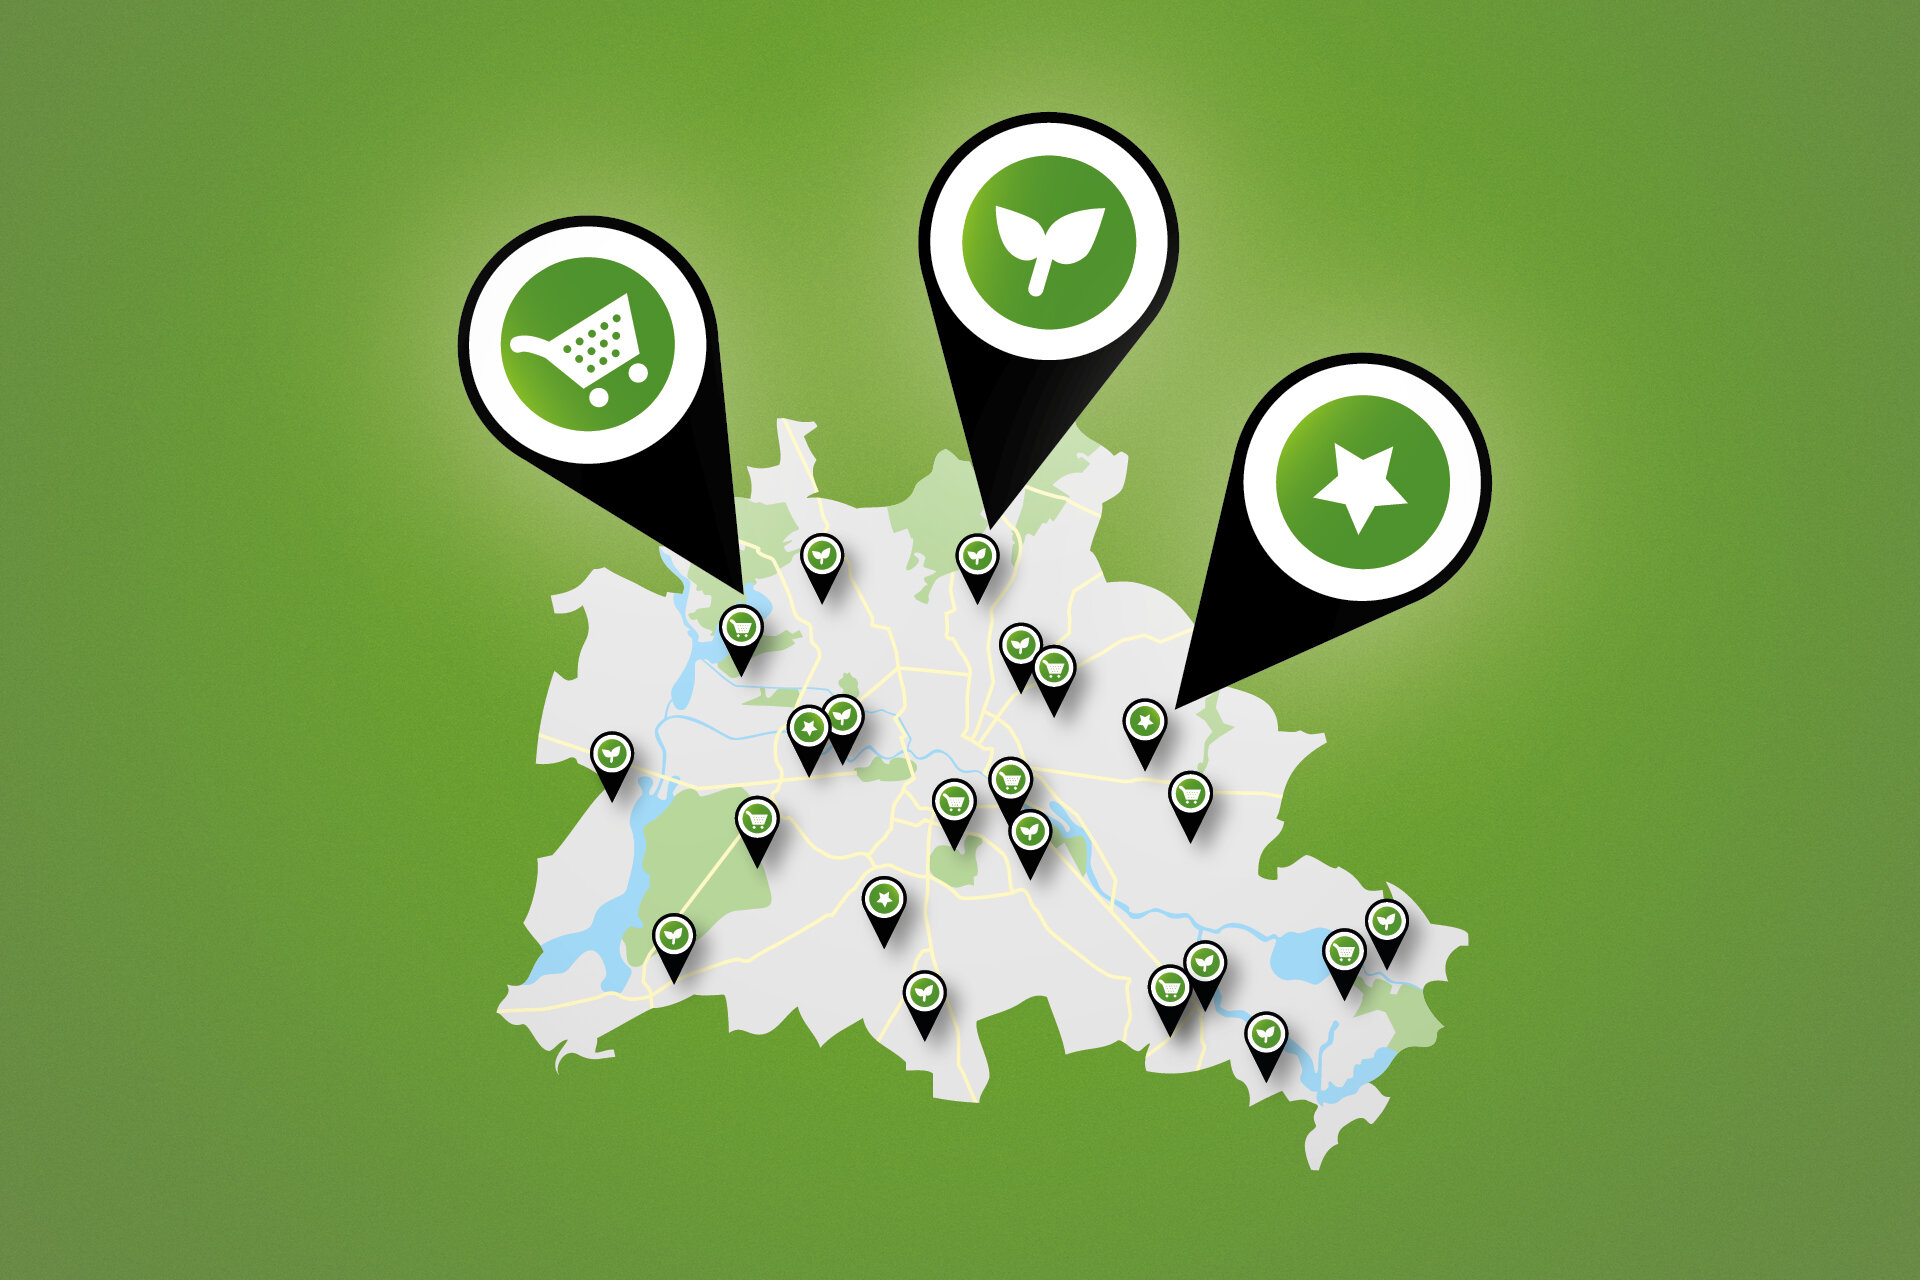 illustrierte Karte von Berlin mit Pins an nachhaltigen Orten auf grünem HIntergrund